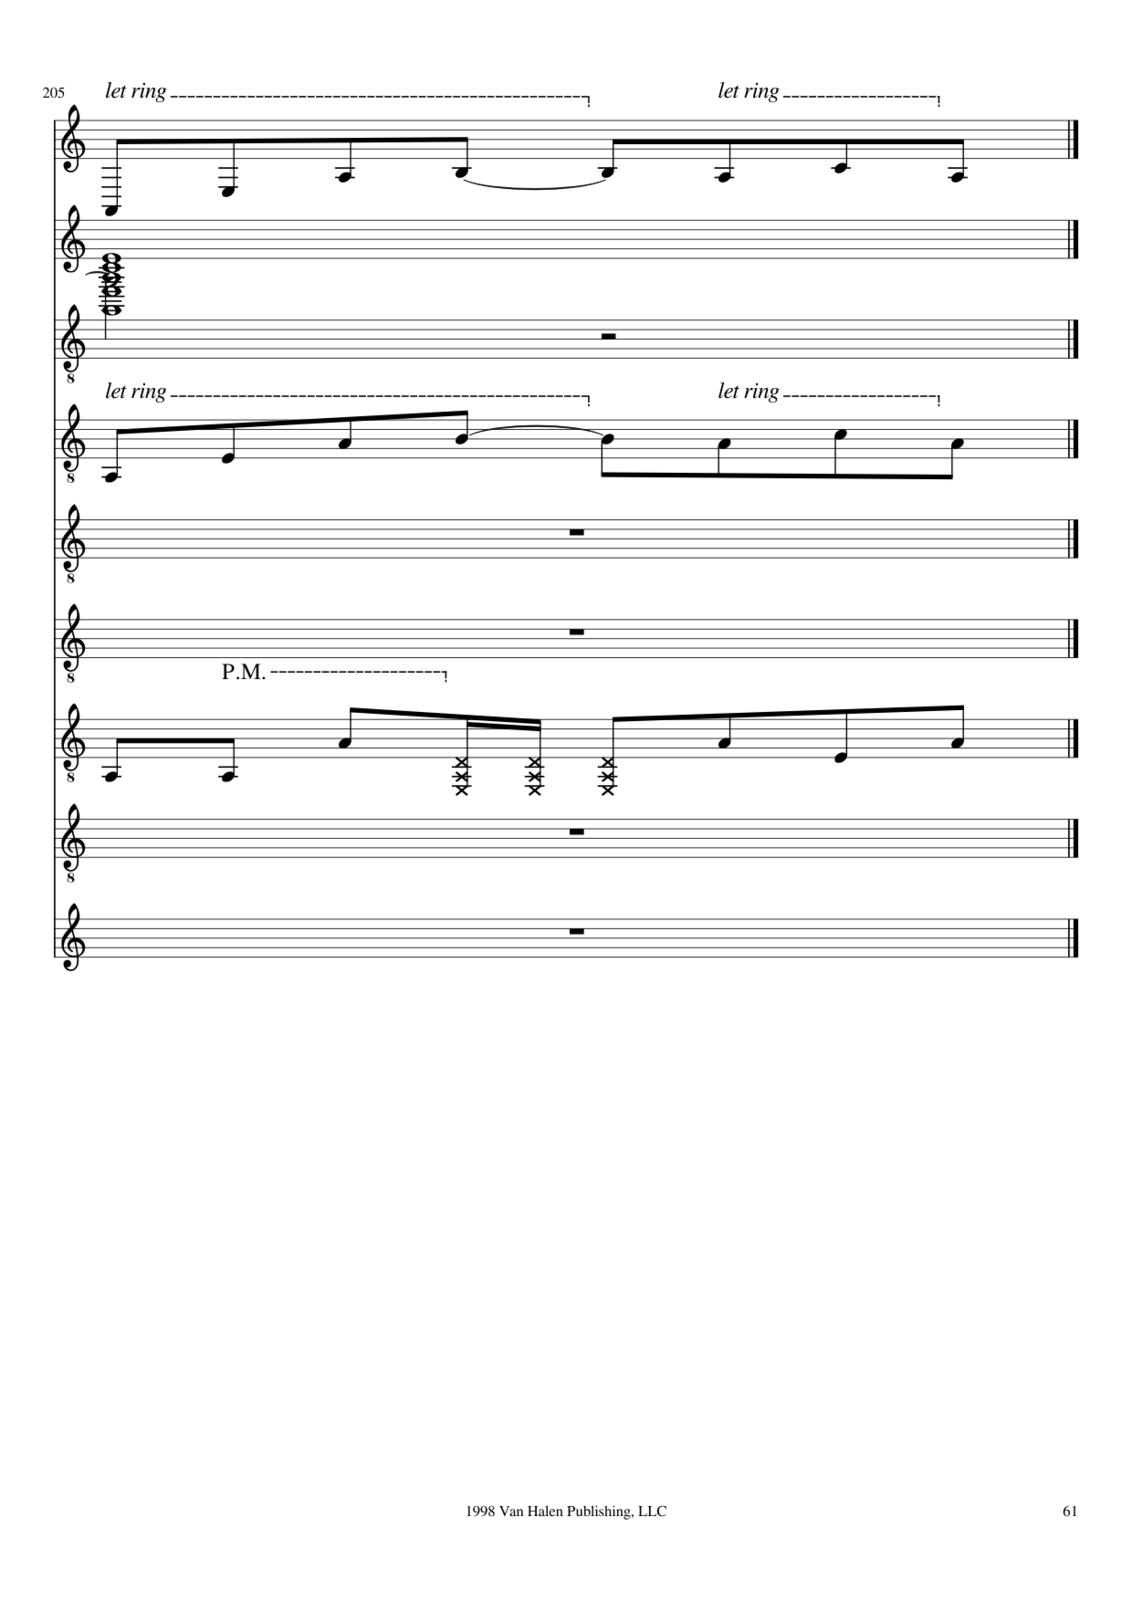 Vechnaya prizrachnaya vstrechnaya slide, Image 35